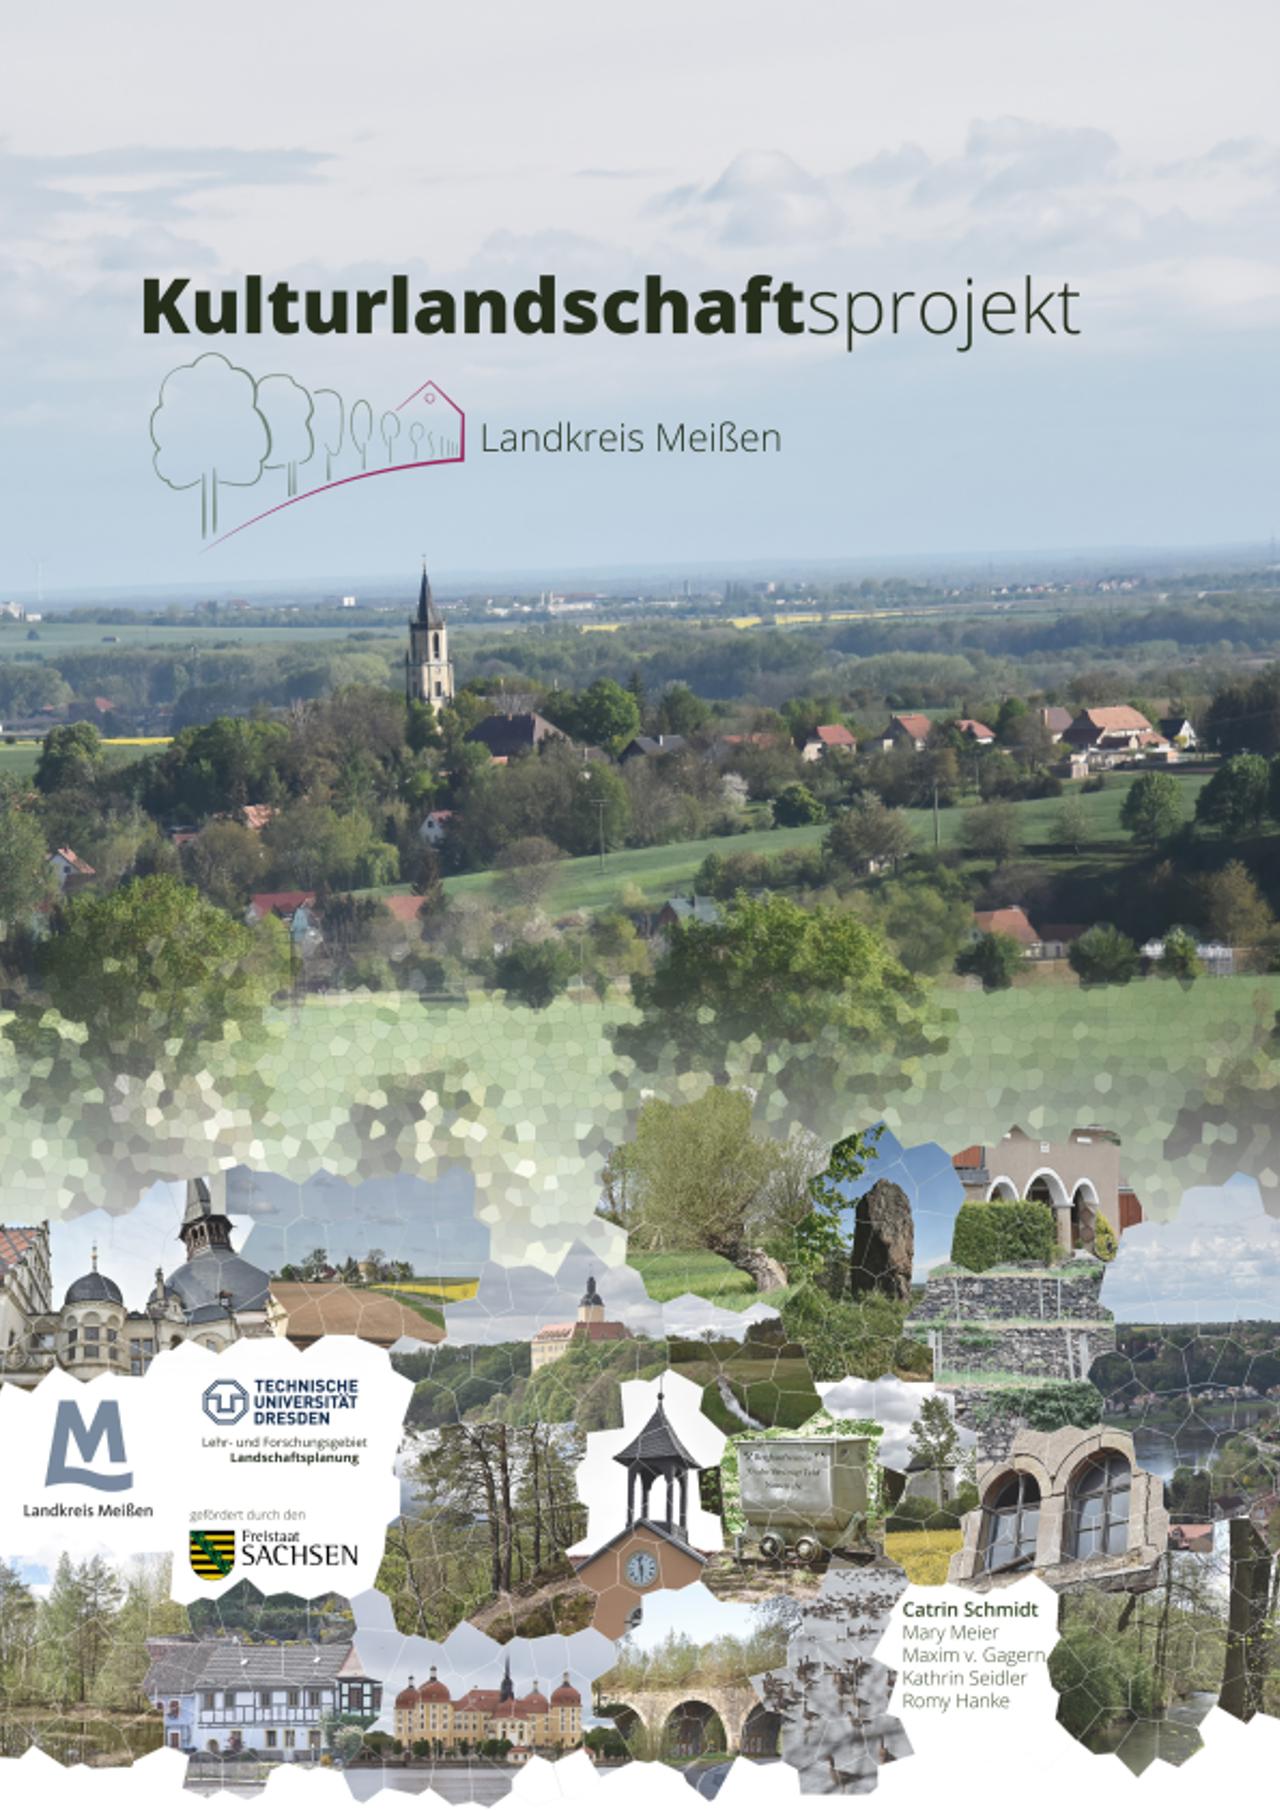 Vorschau Dokument: Broschüre "Kulturlandschaften Landkreis Meißen" (Zur Beachtung: Jegliche Verwendung der Broschüre ist nur mit Quellenangabe zulässig.) - download Dokument